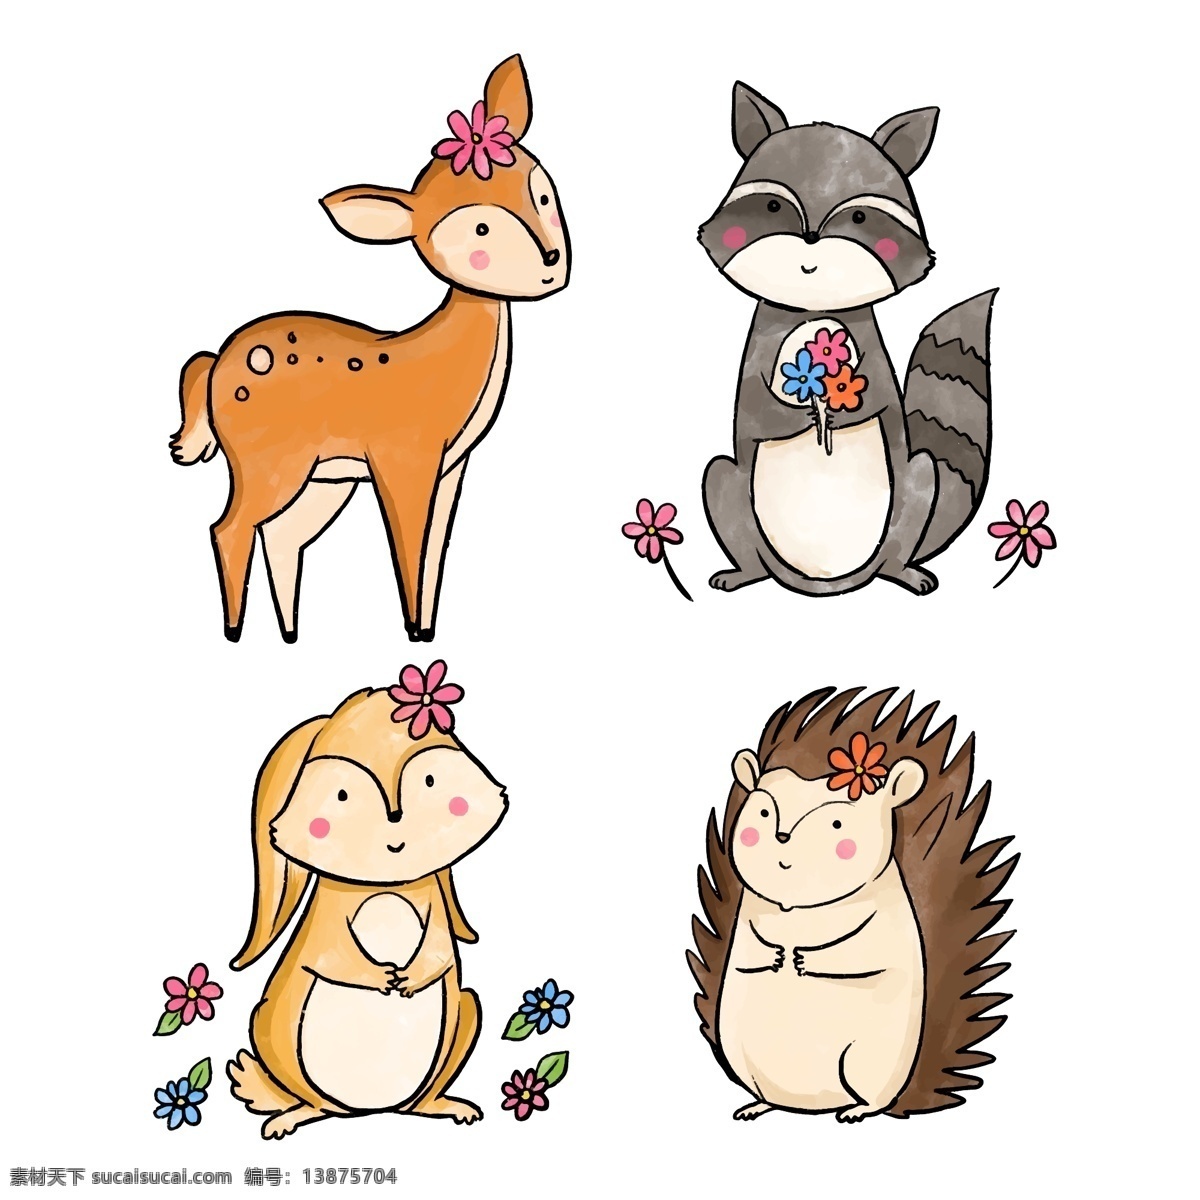 卡通动物图片 卡通动物 野生动物 手绘动物 可爱 动物素材 矢量动物 卡通设计